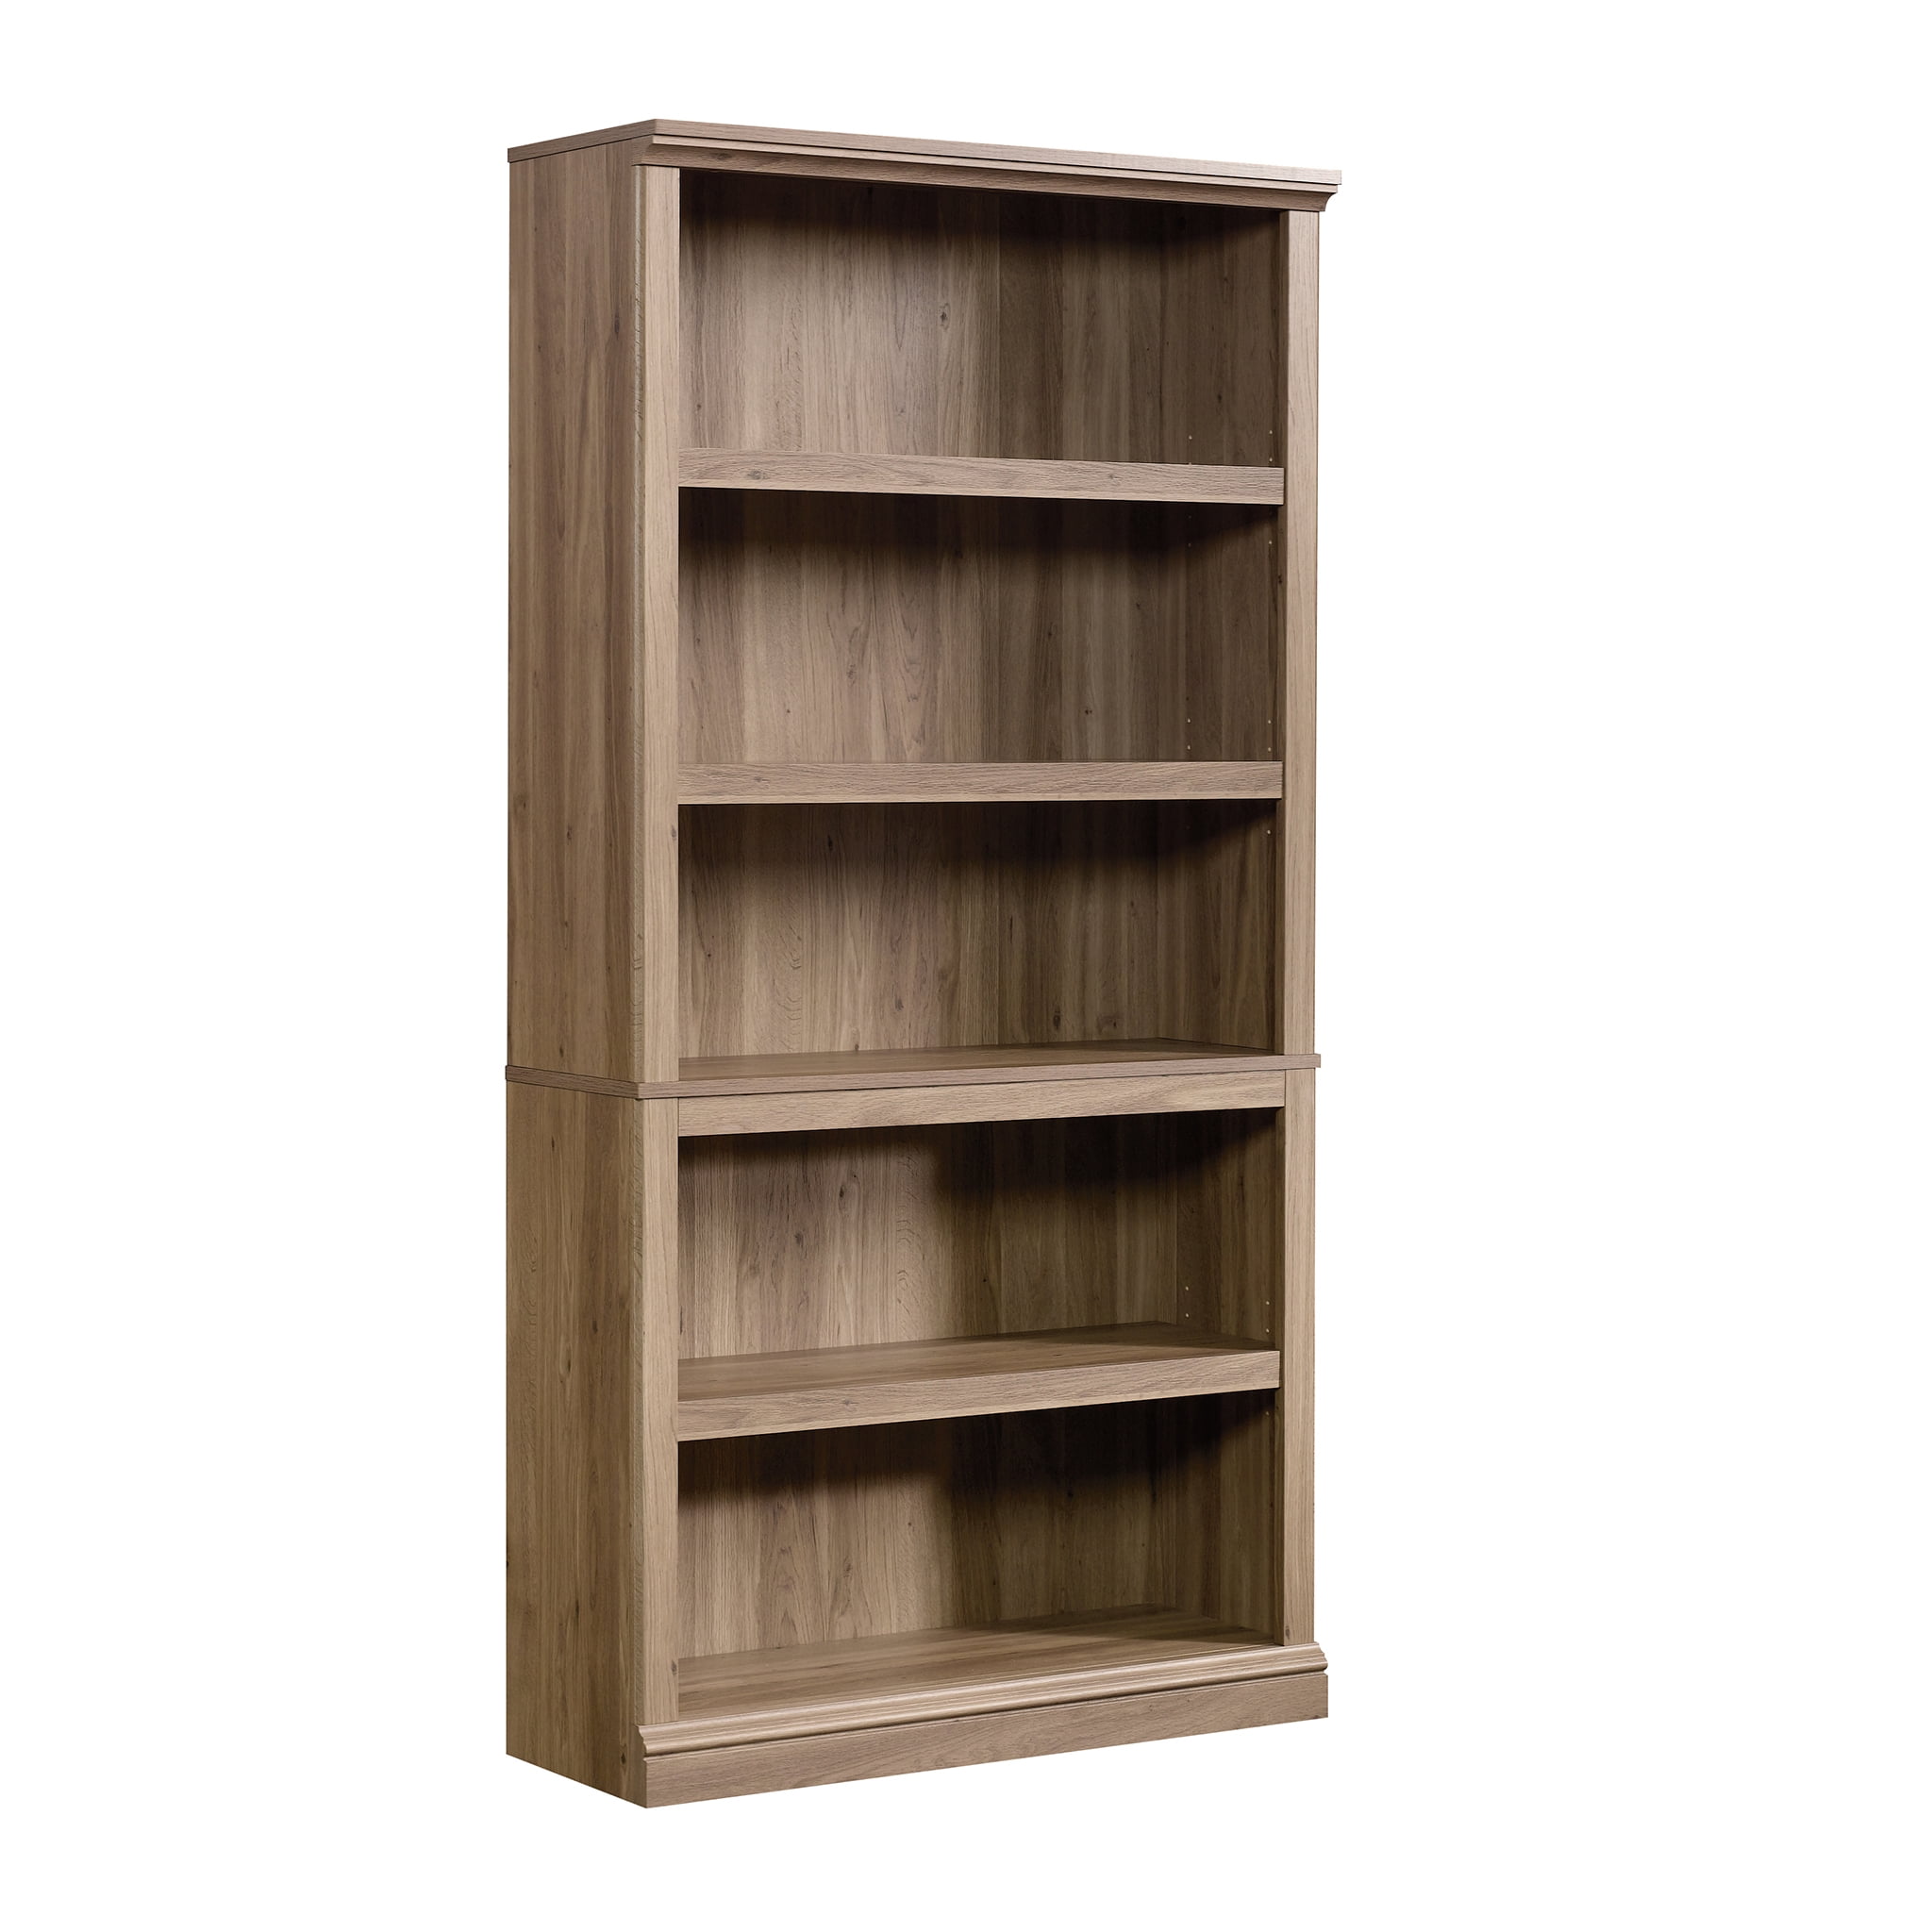 Sauder Select 5-Shelf Bookcase, Chalked Chestnut Finish